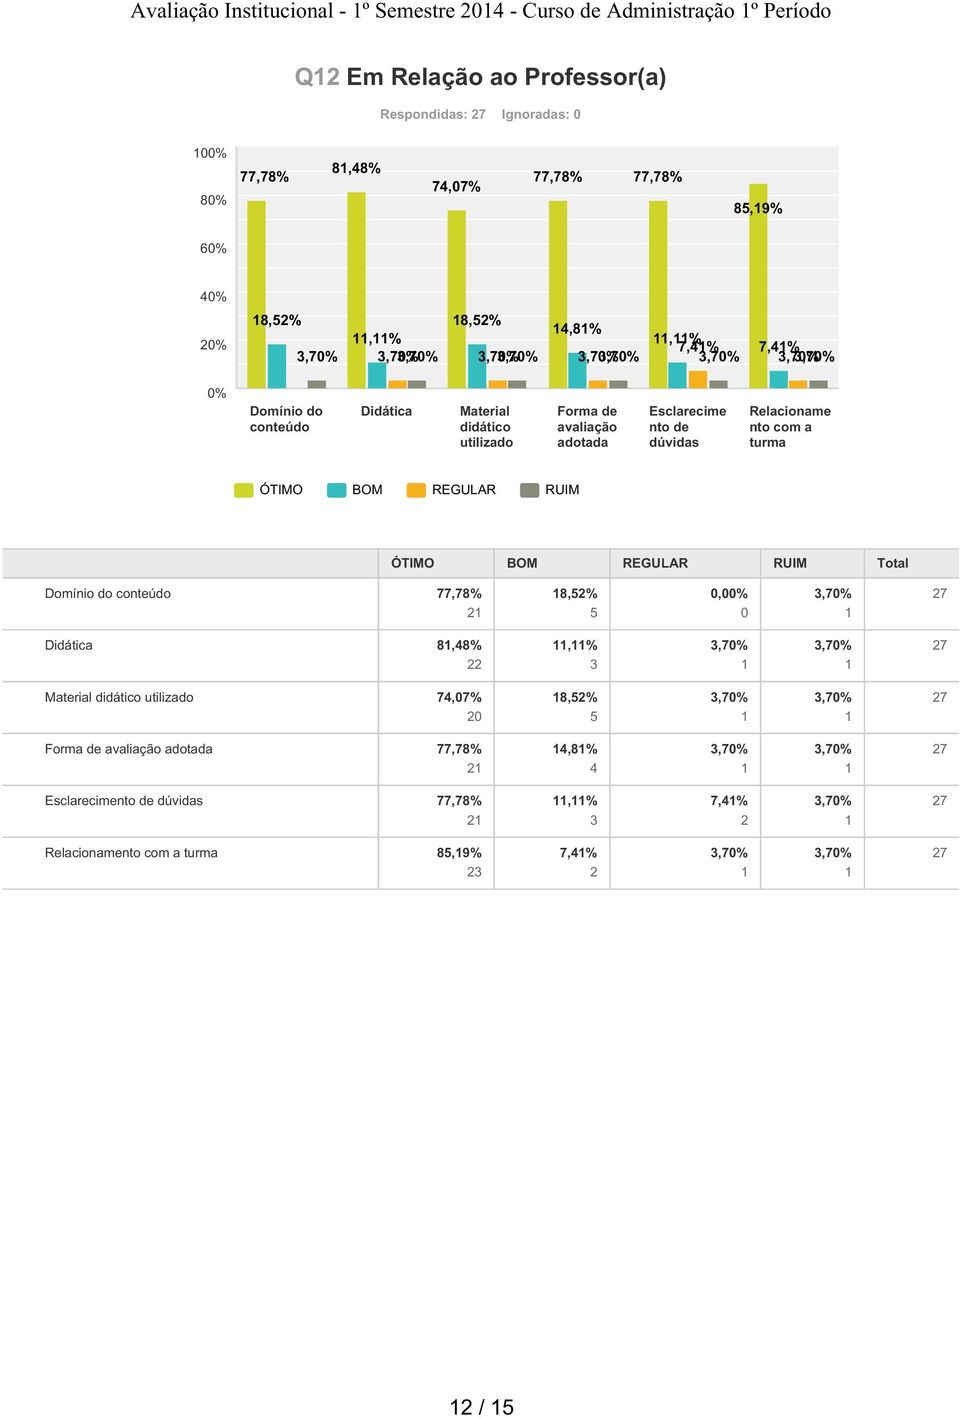 avaliação adotada Esclarecime nto de dúvidas Relacioname nto com a turma Domínio do conteúdo,8% 8,5% 5,% 8,8%,%,%,% Material